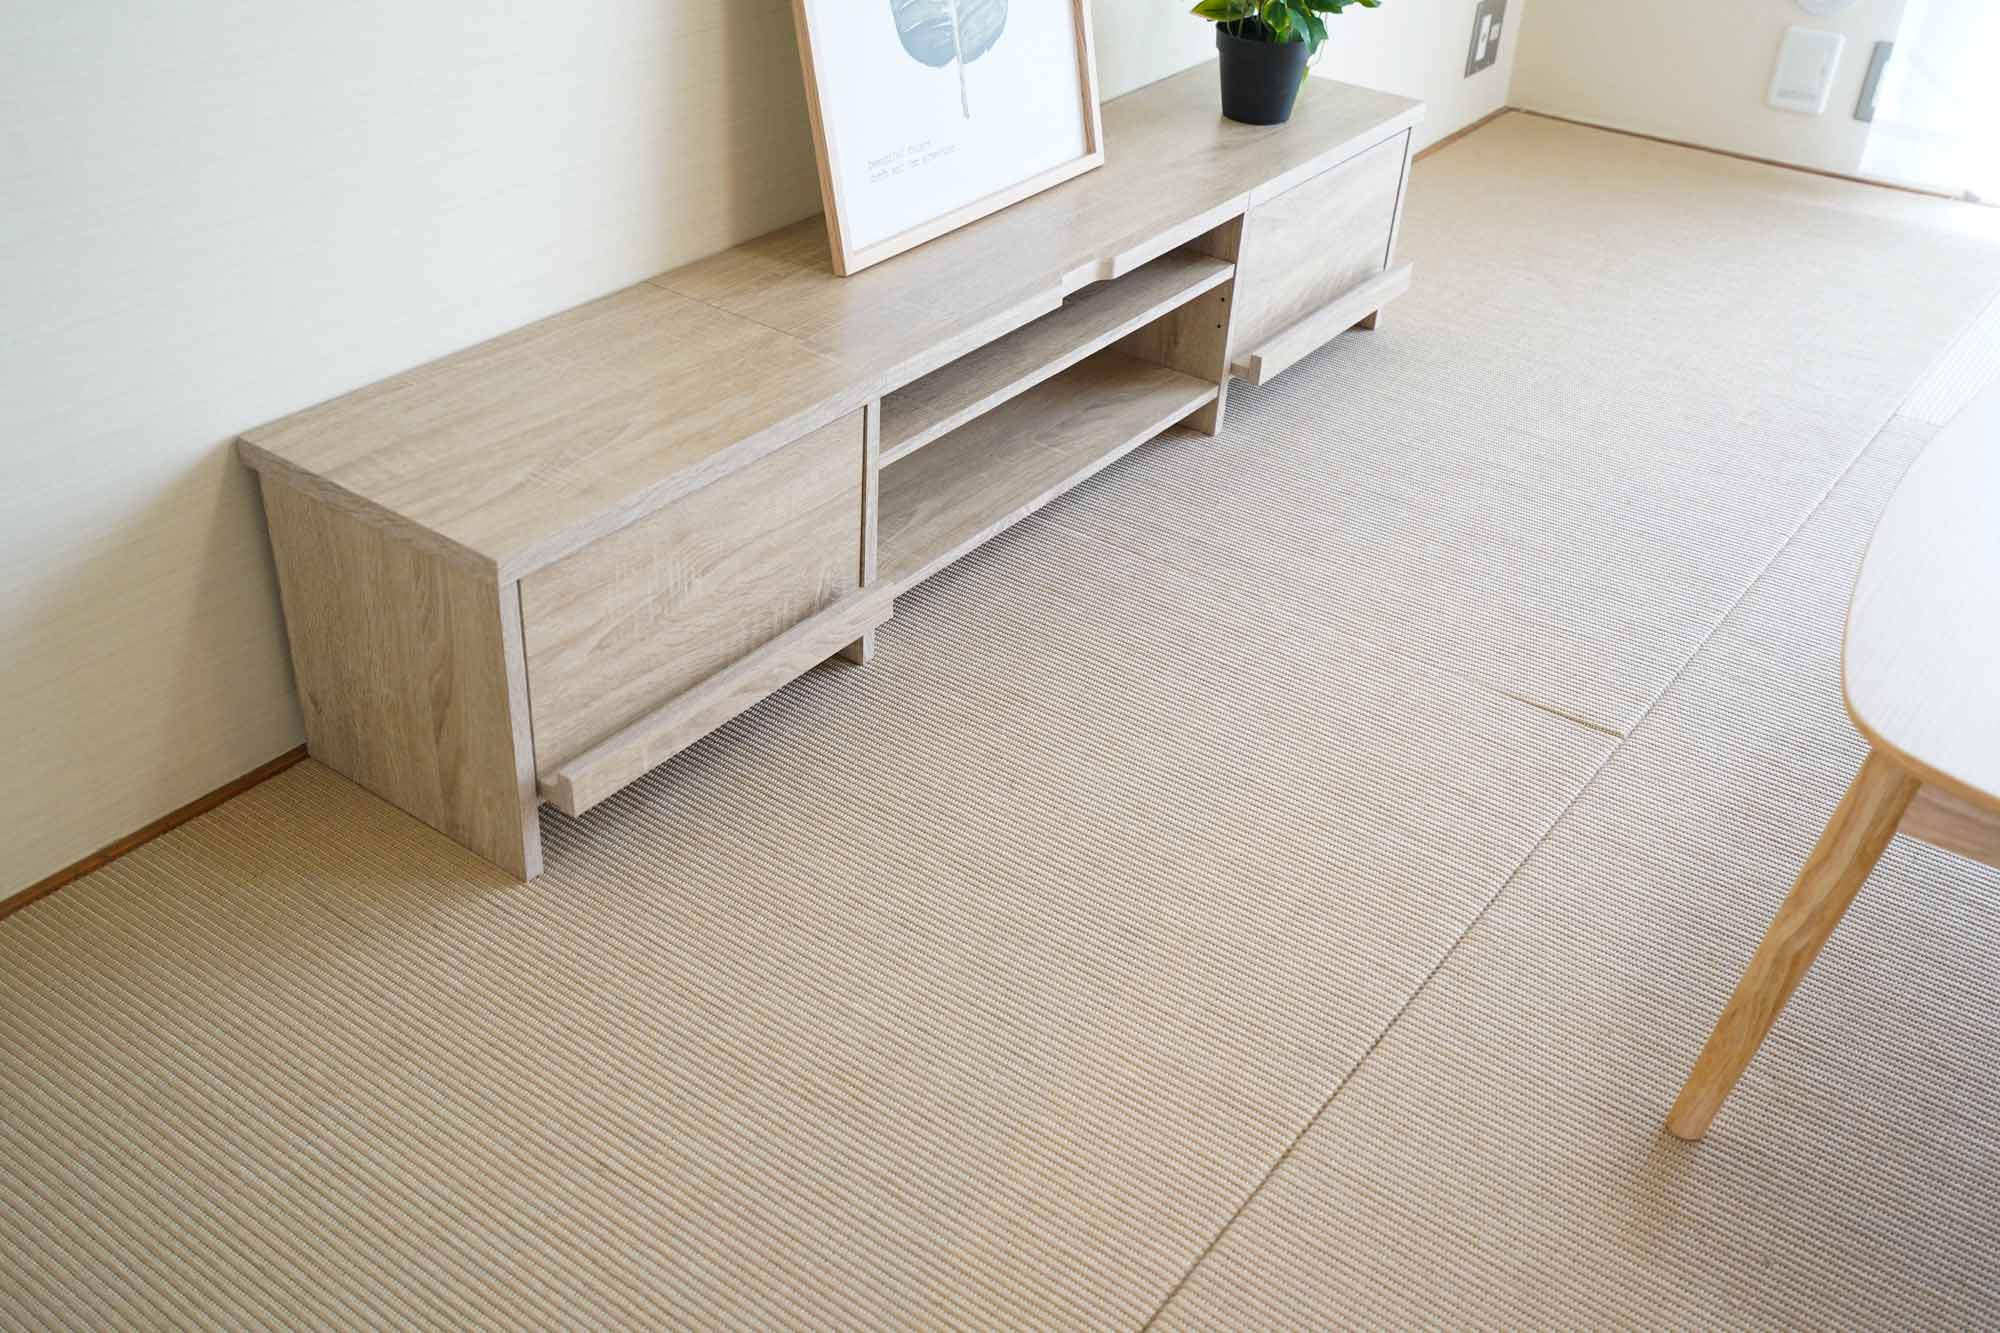 和室には「麻畳」を採用。足音も吸収してくれ、座って子どもと一緒に過ごすことができる畳のスペースは、子育て世代にとっては特に利用しやすいですよね。